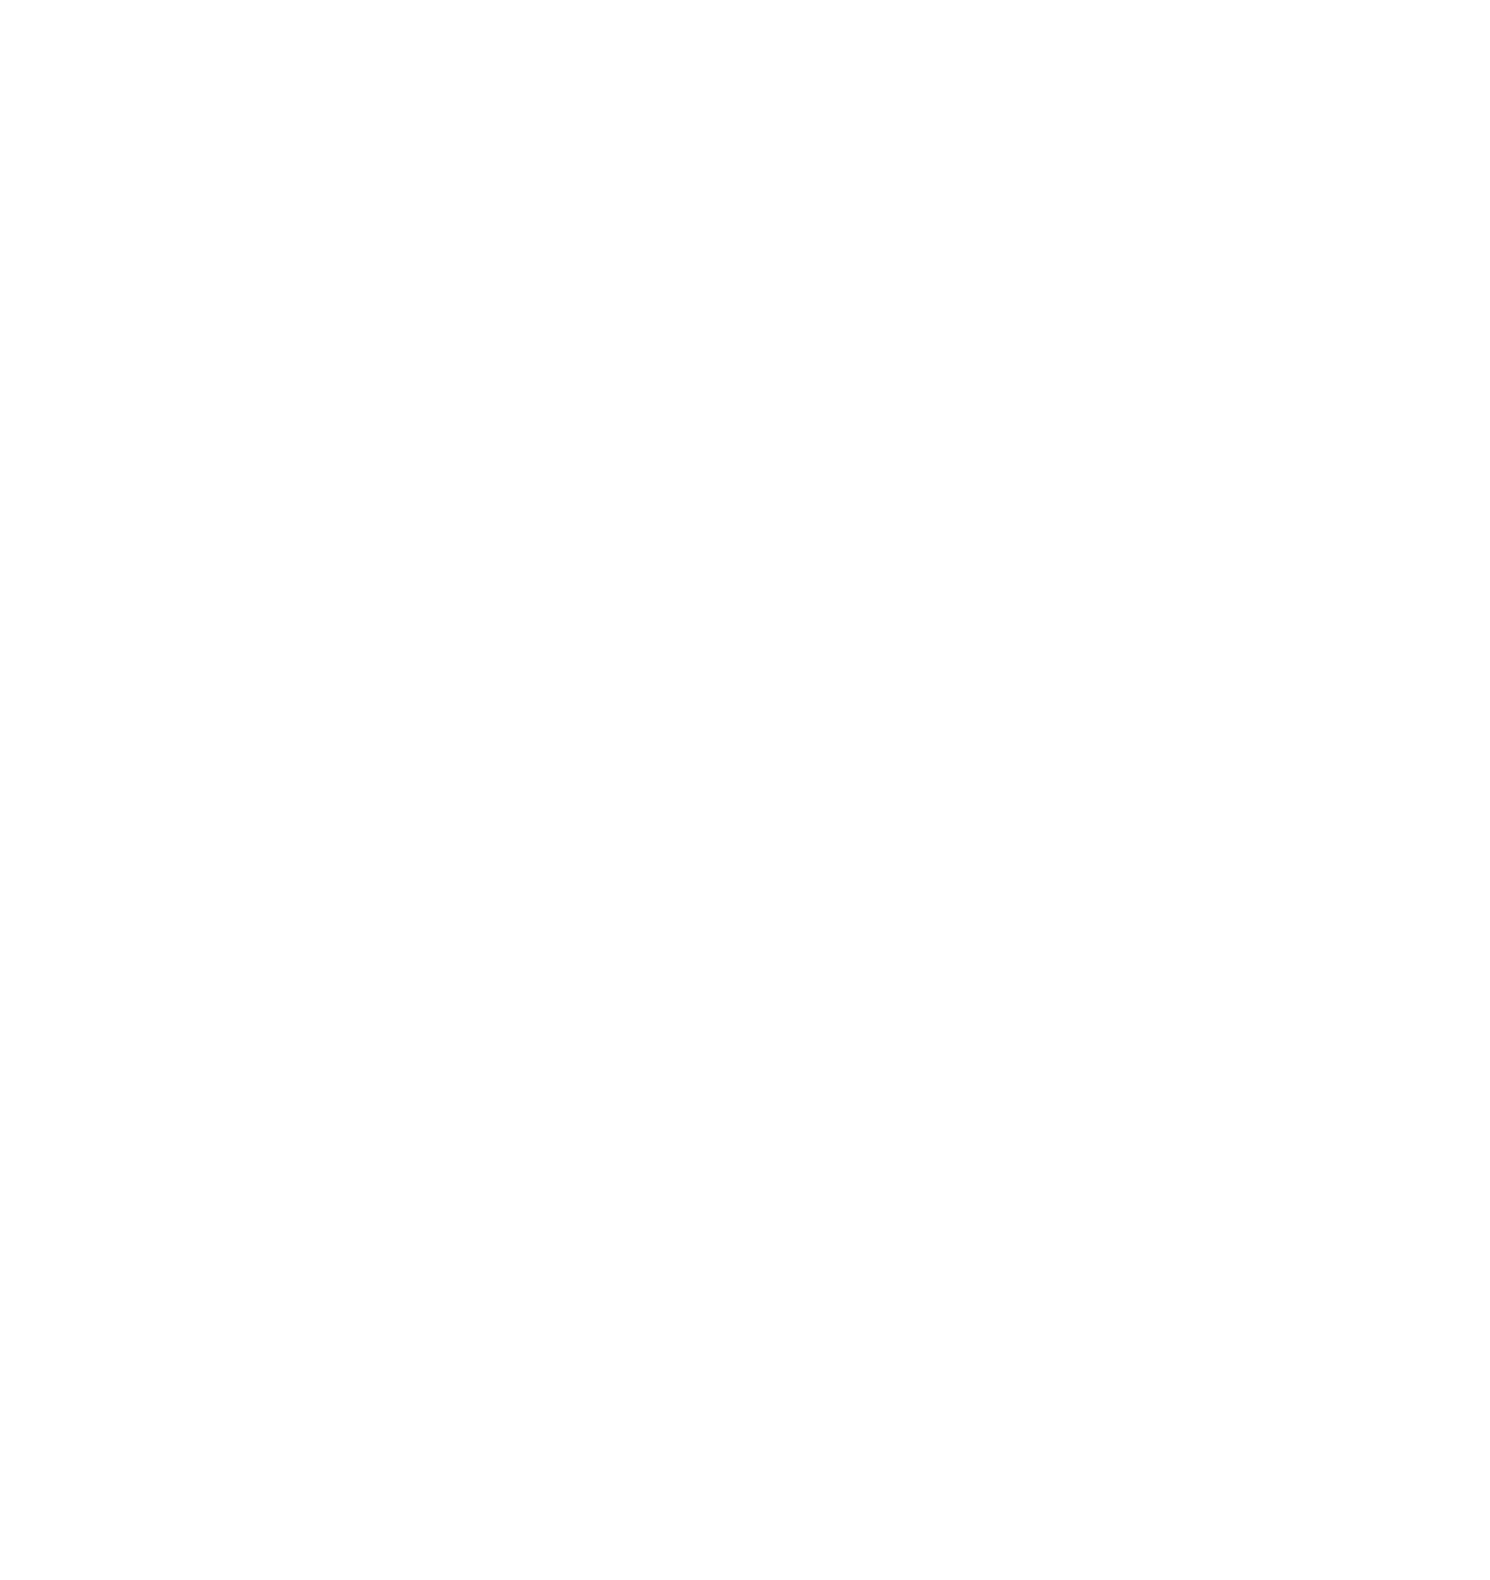 Aker Carbon Capture logo for dark backgrounds (transparent PNG)